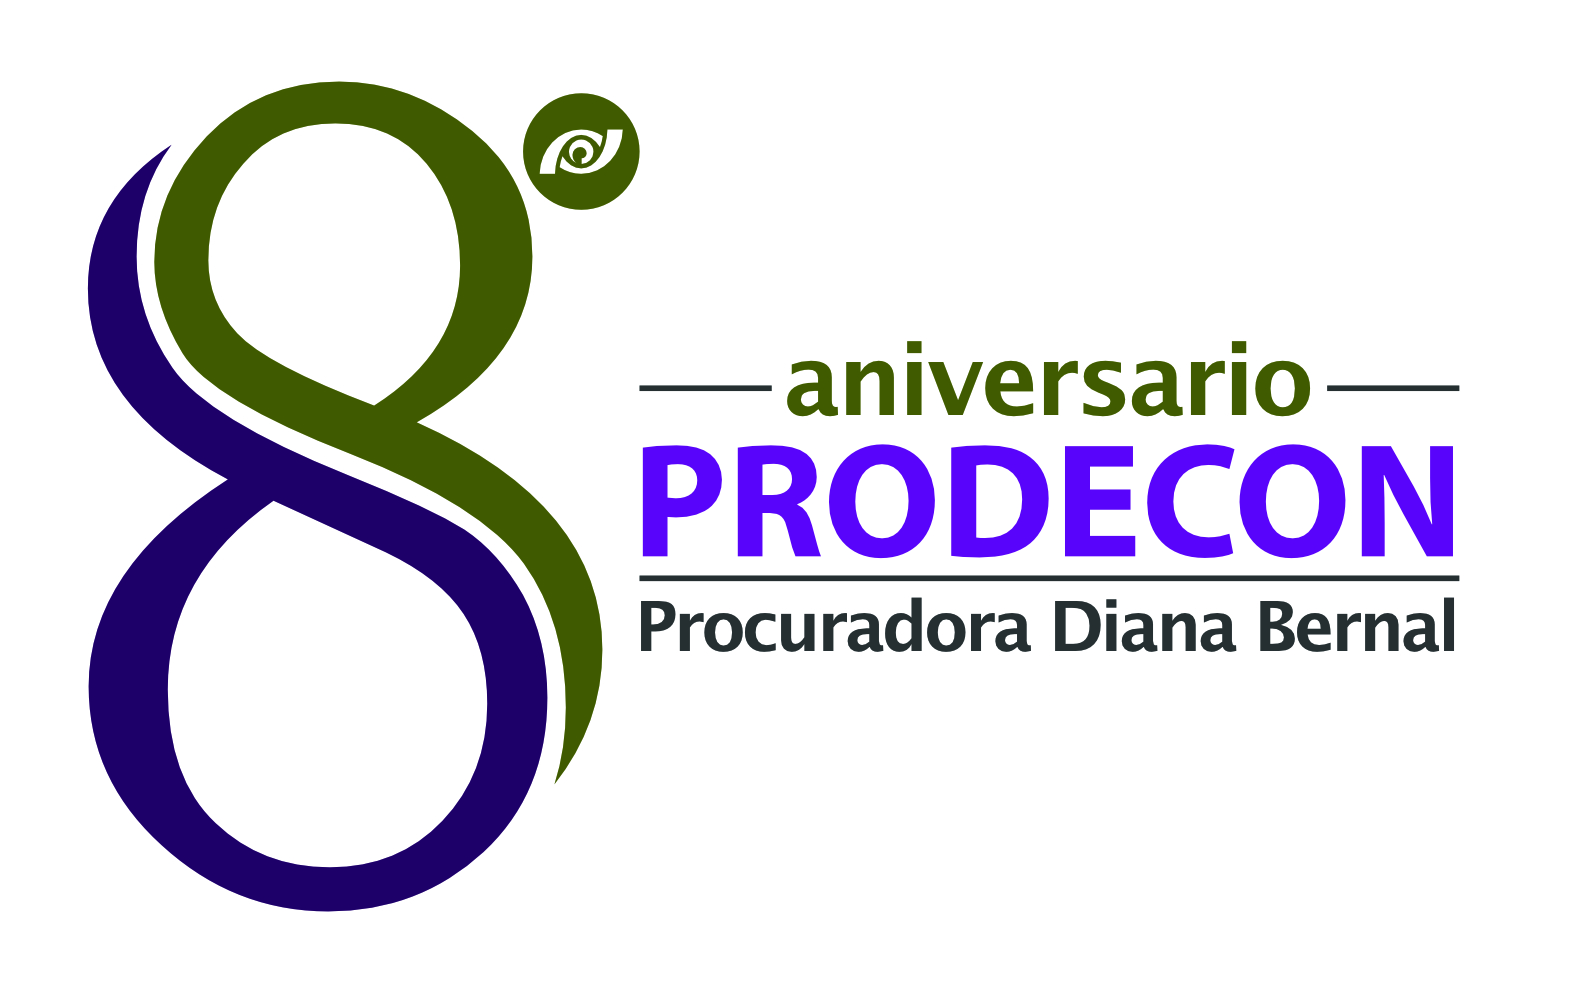 Informe de gestión de la Procuradora Diana Bernal a 8 años de la creación de PRODECON